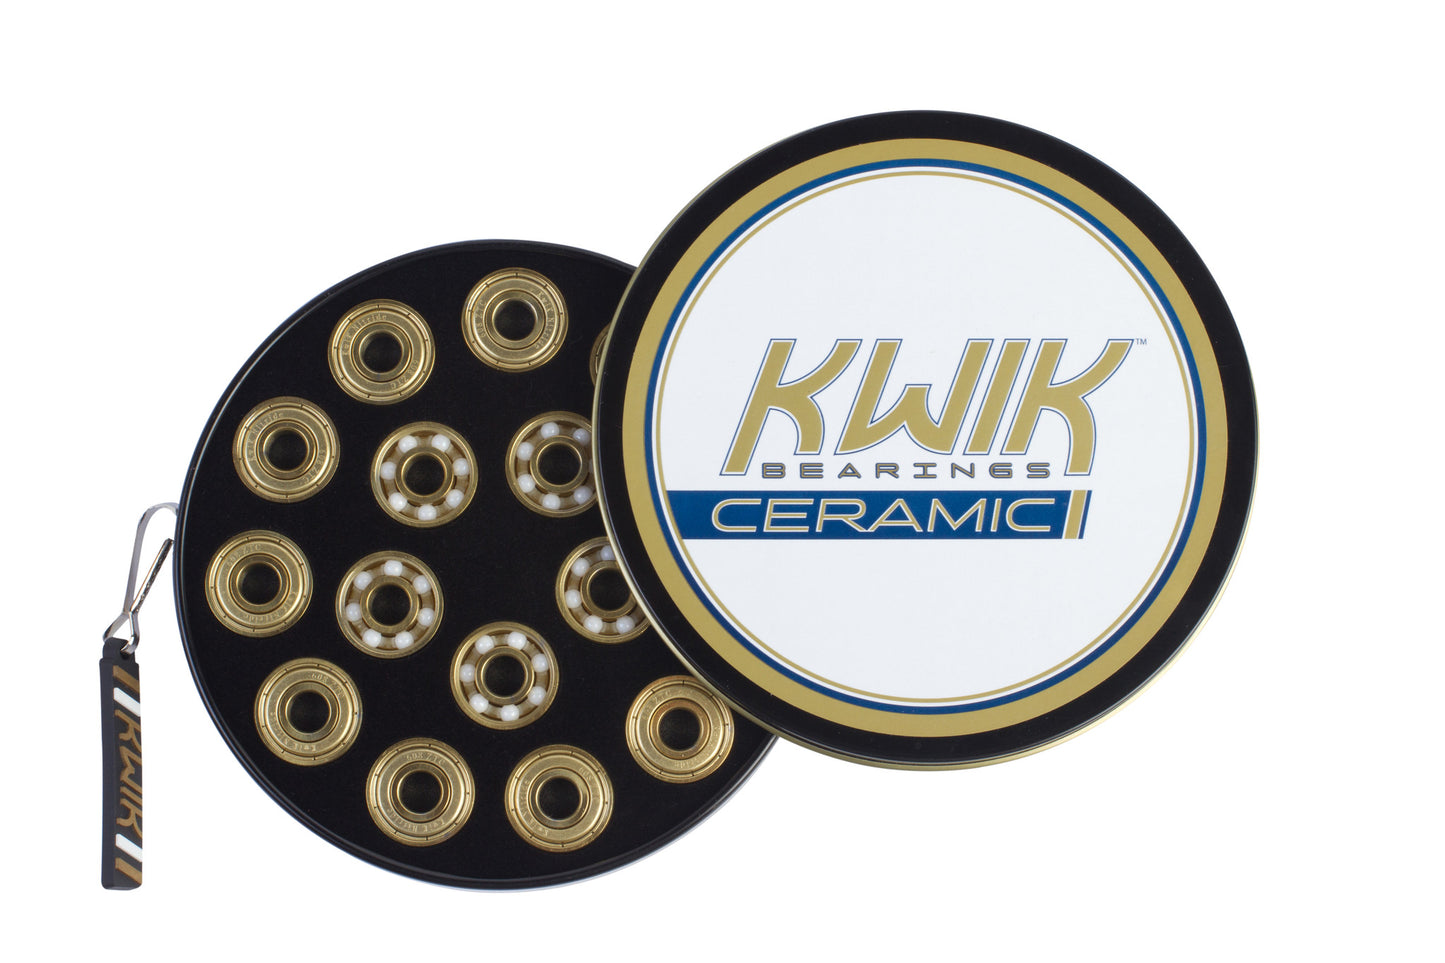 Kwik Ceramic Bearings 8mm 16pack